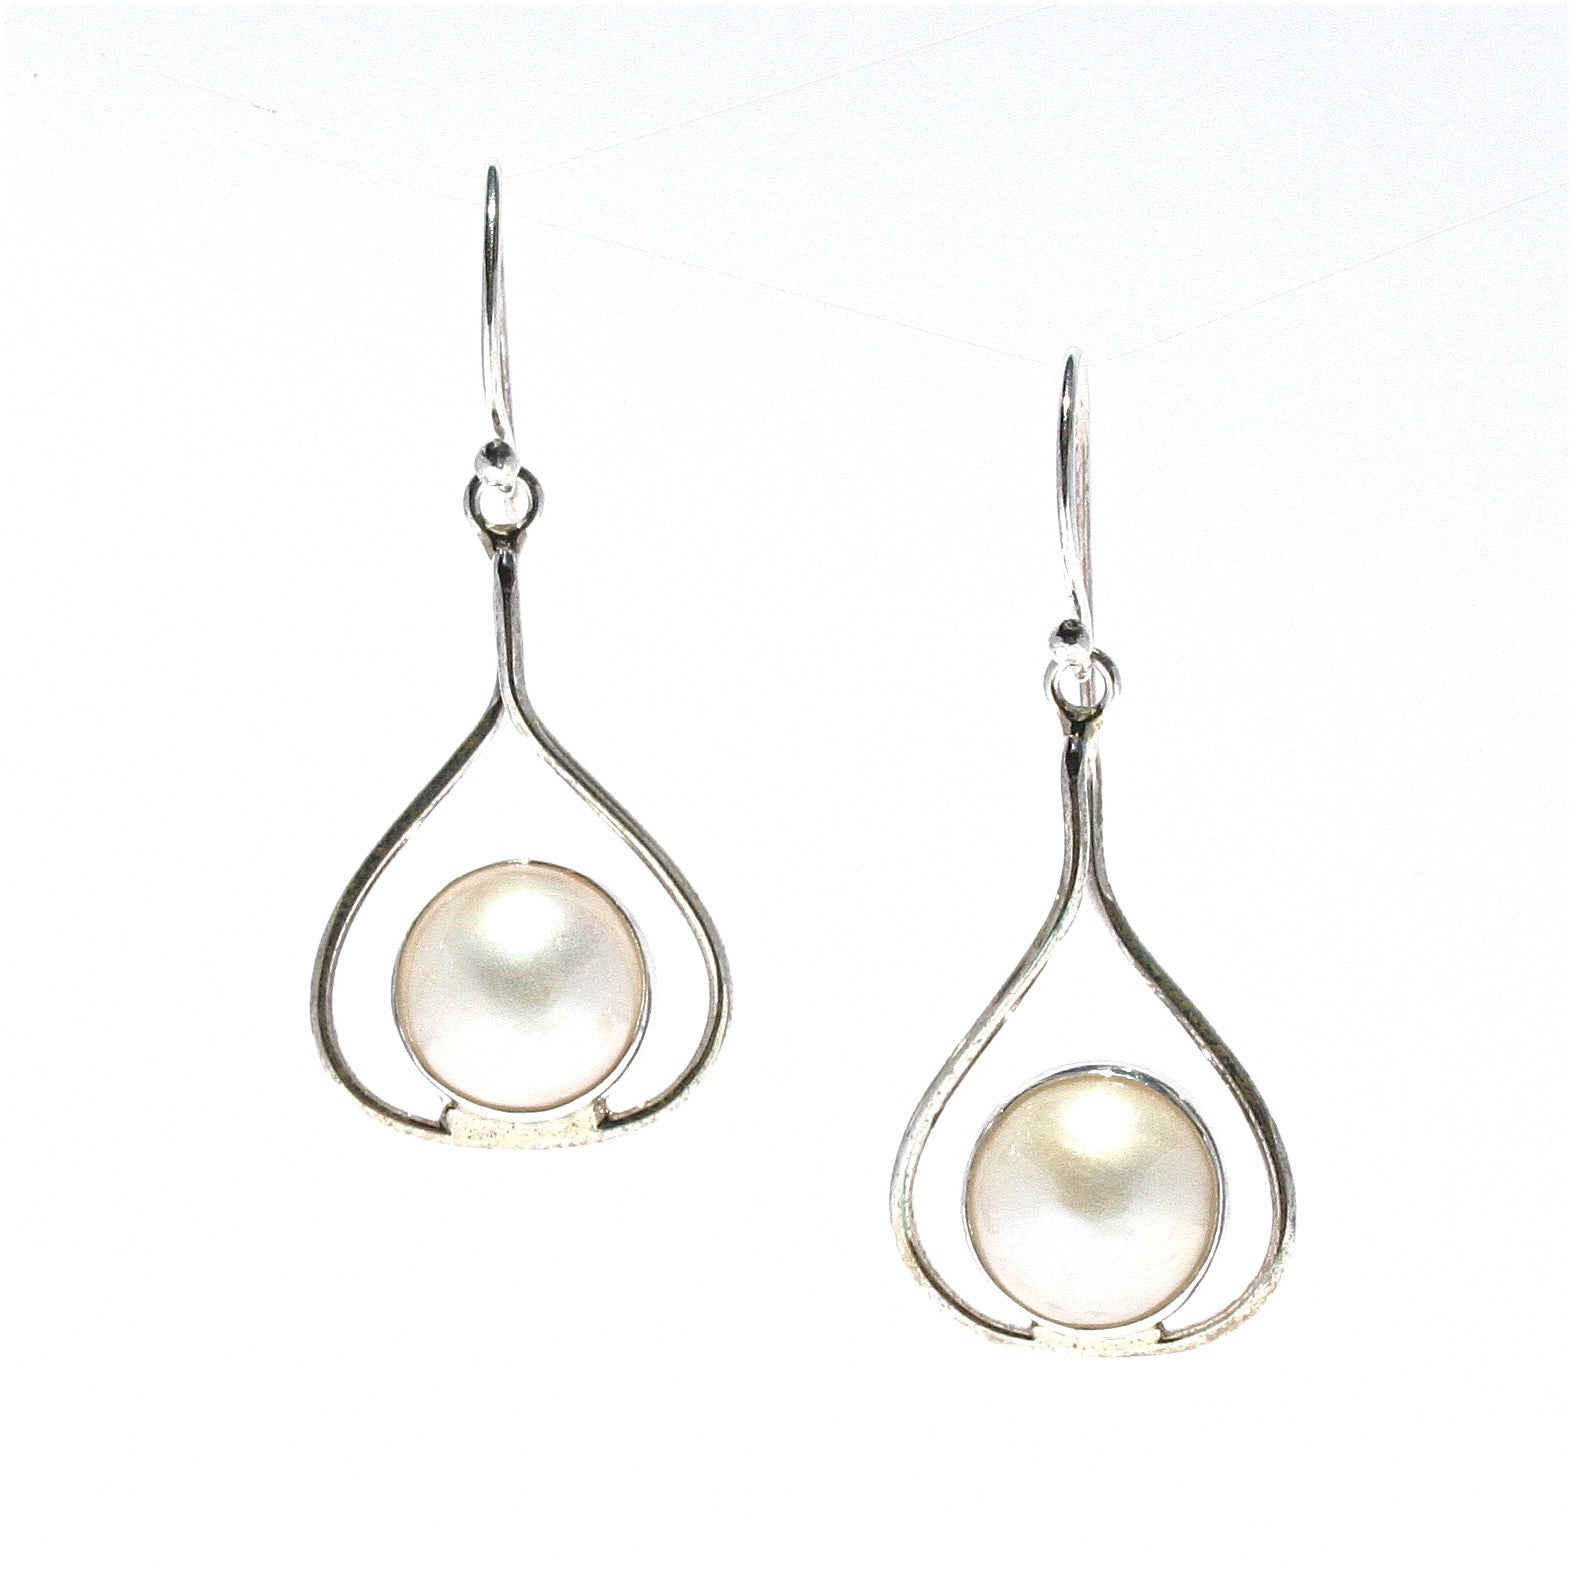 mabe pearl earrings